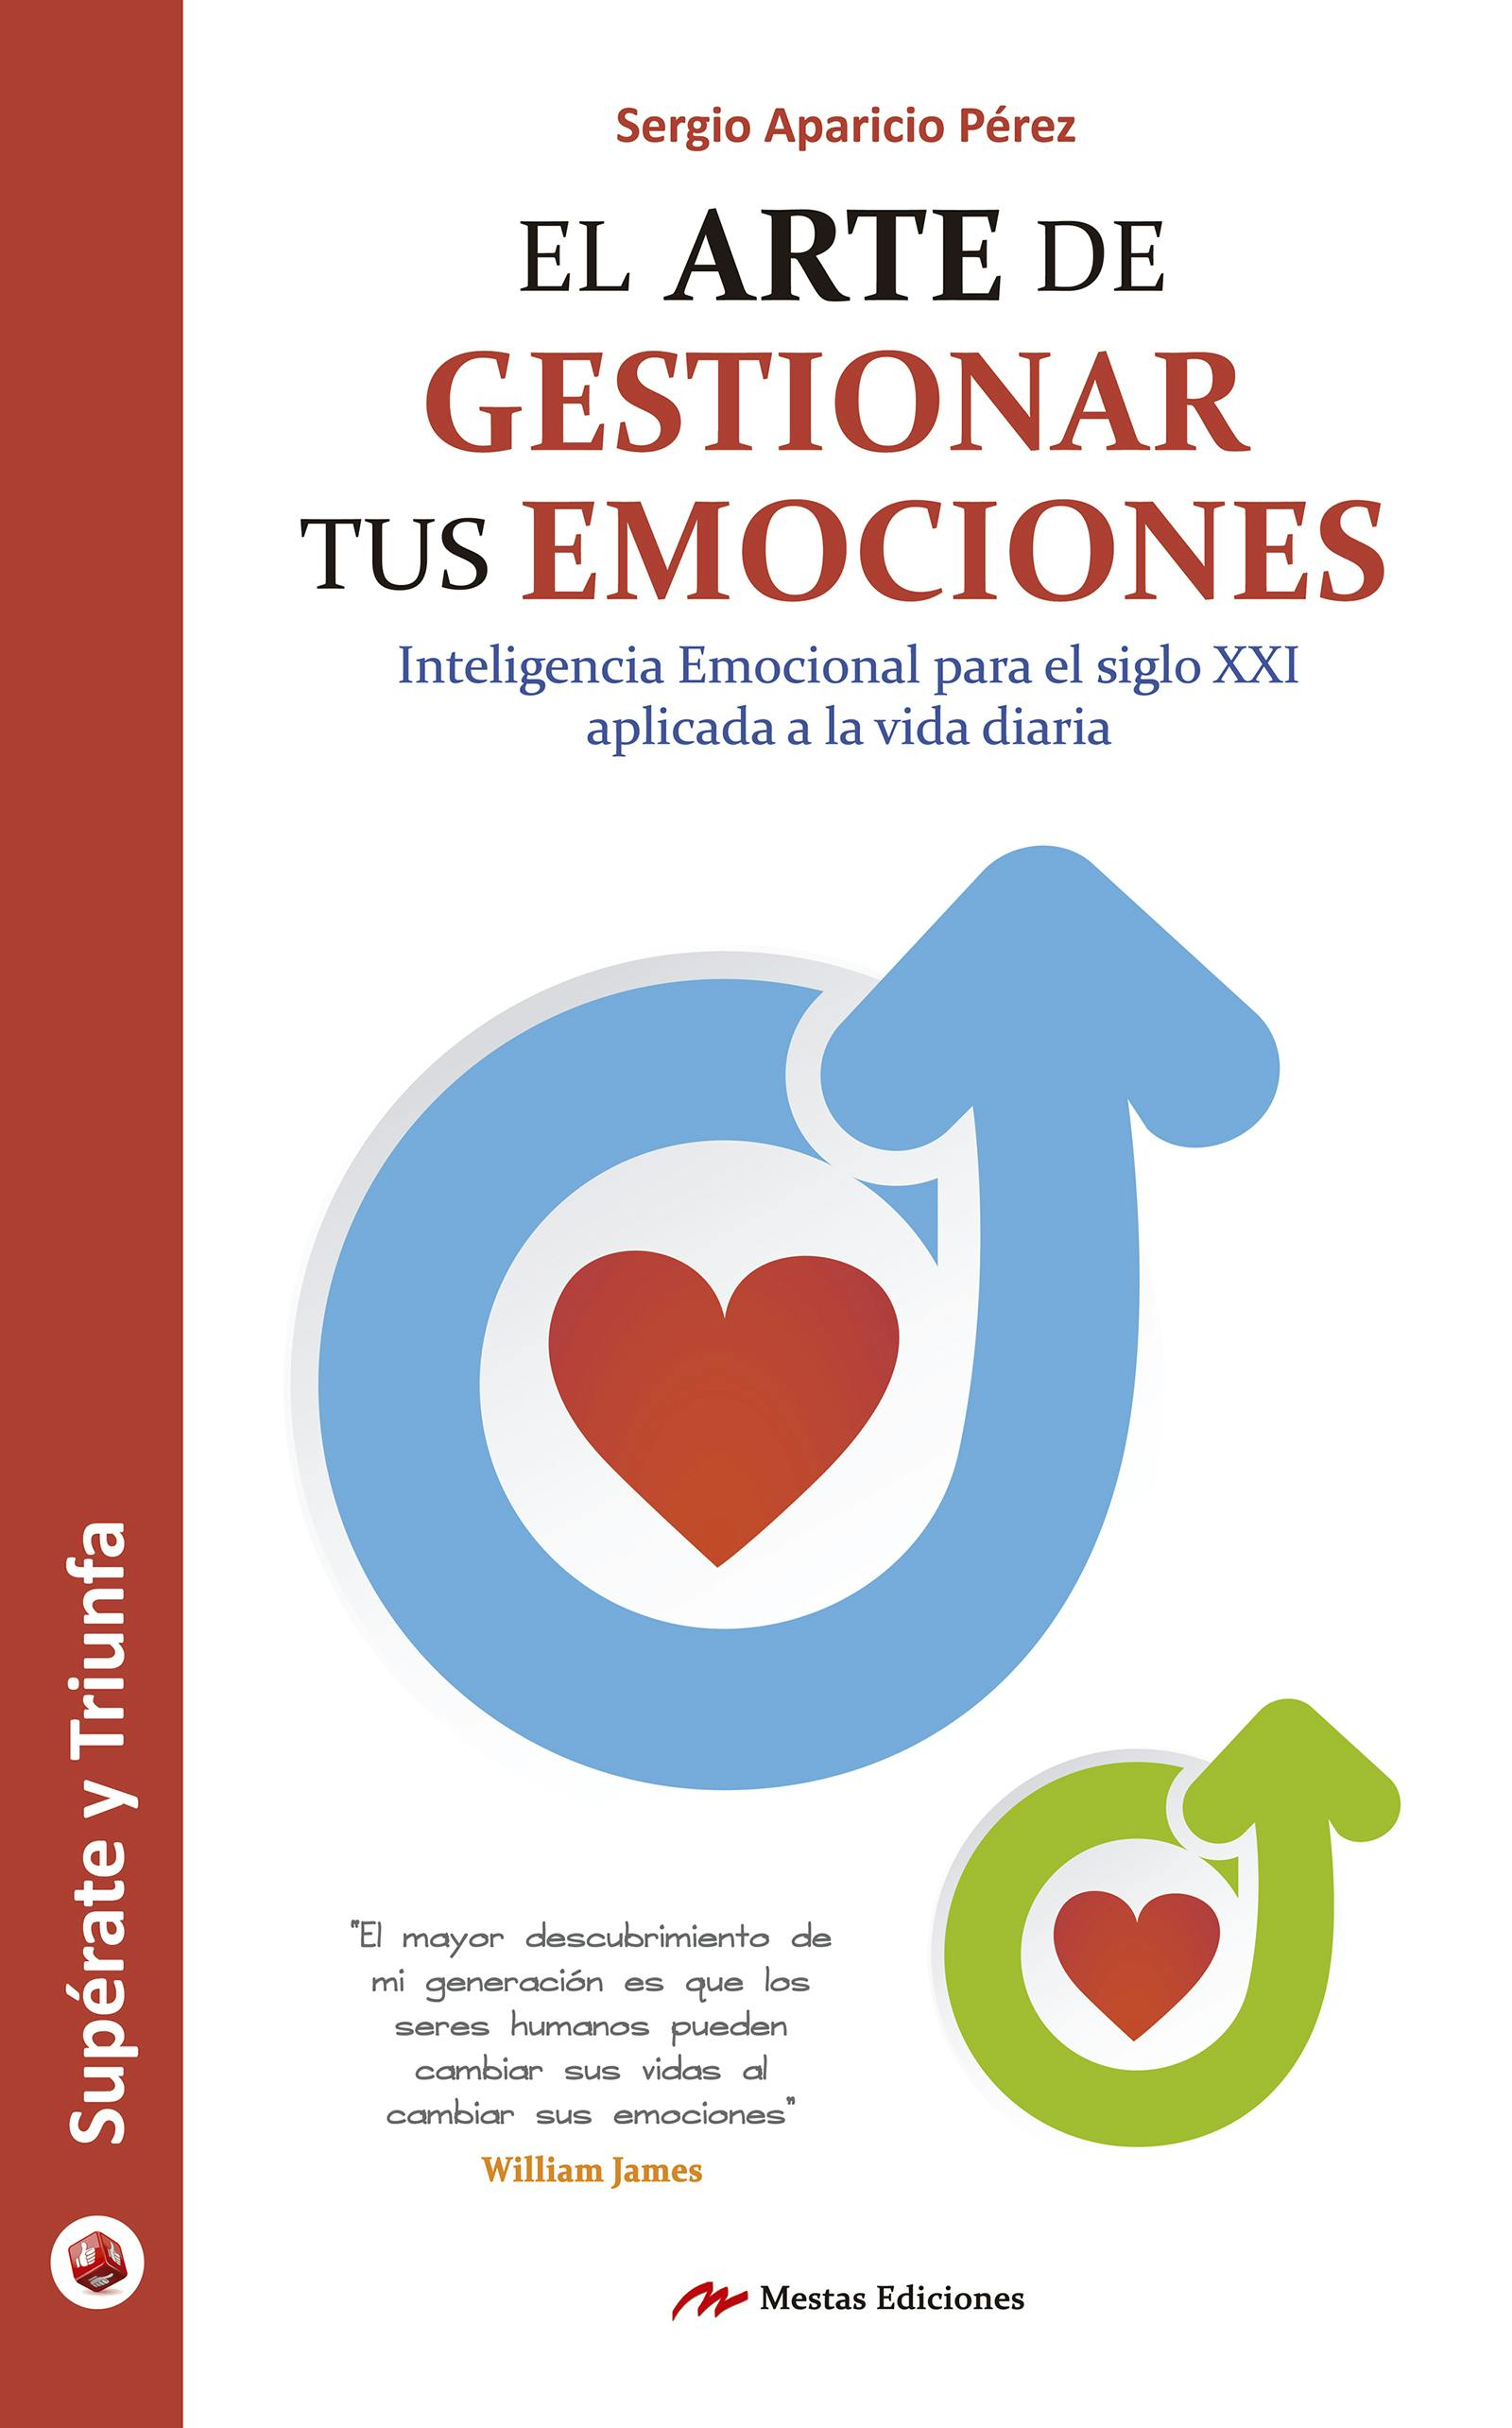 El arte de gestionar tus emociones: Guía práctica - Sergio Aparicio Pérez